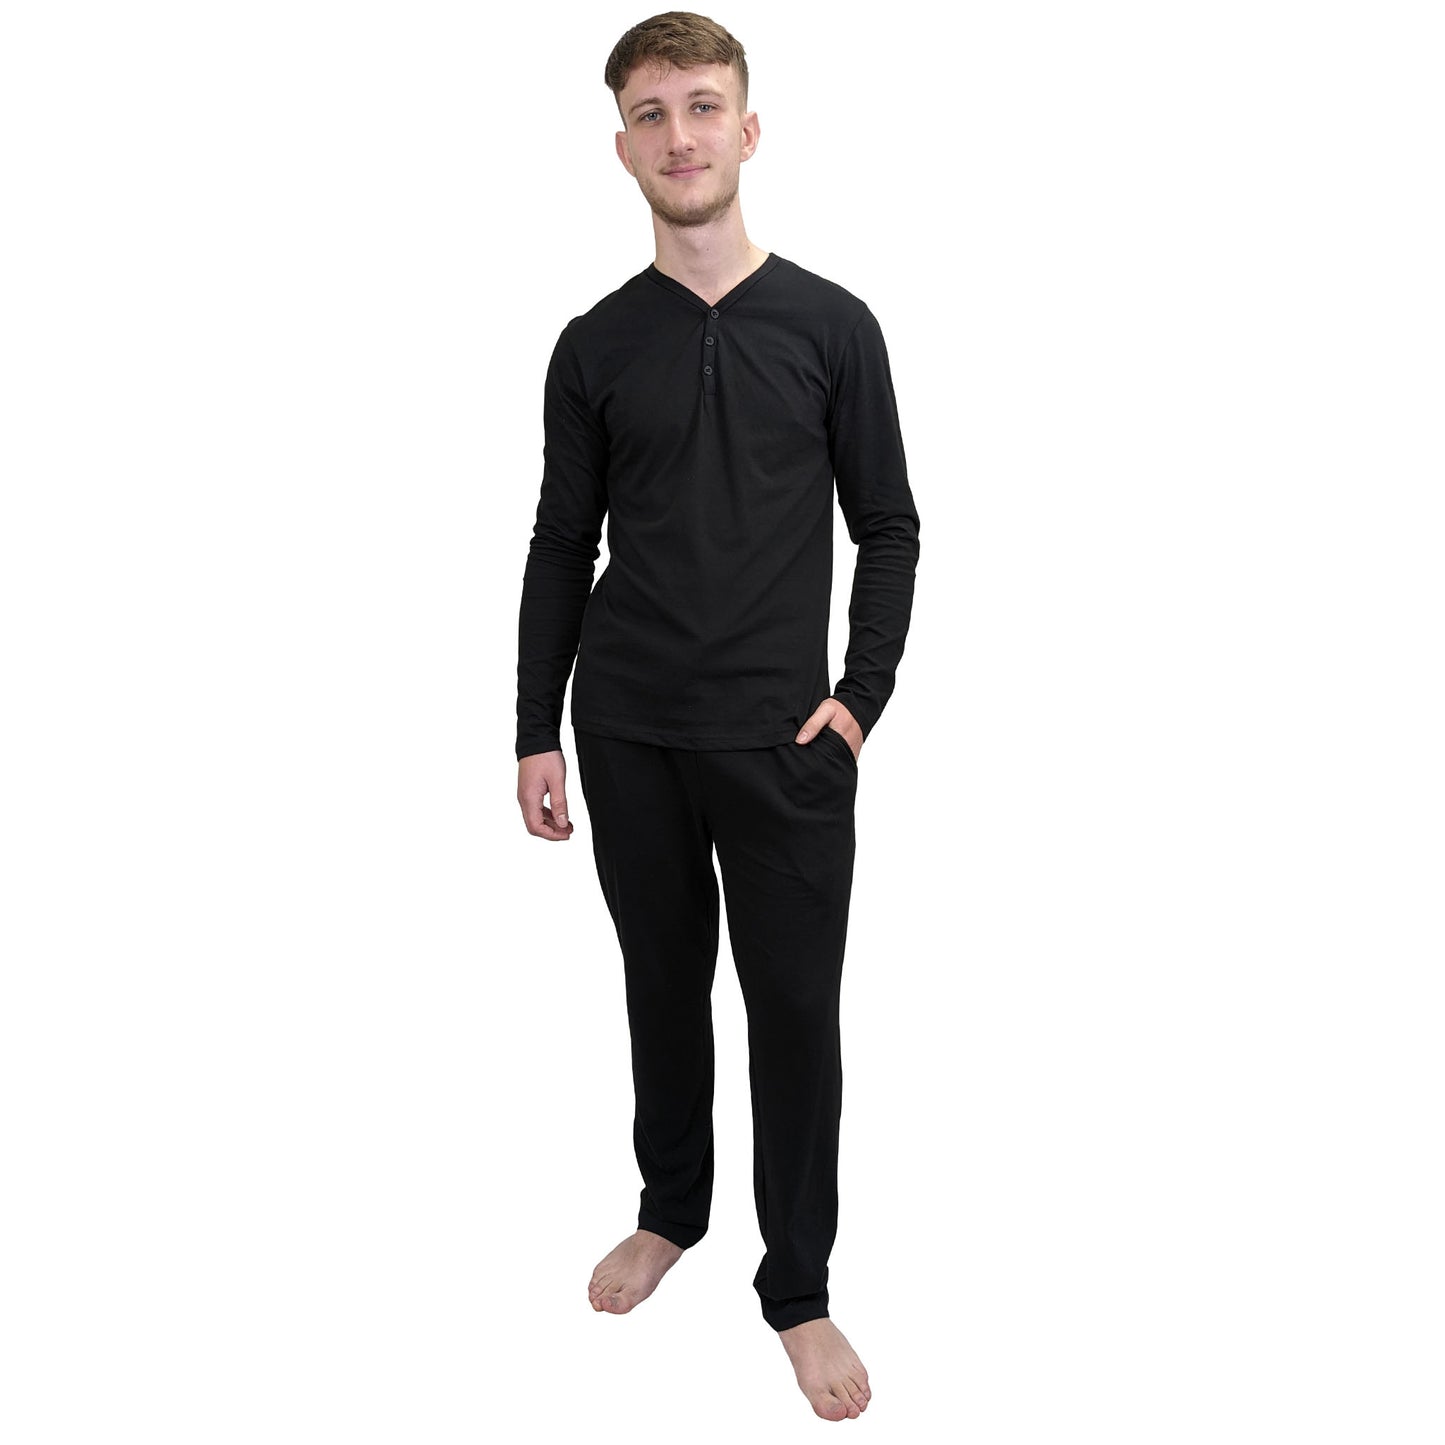 Dapper Mens Pyjamas/Loungewear Sets Black Sleepwear & Loungewear ASASonline